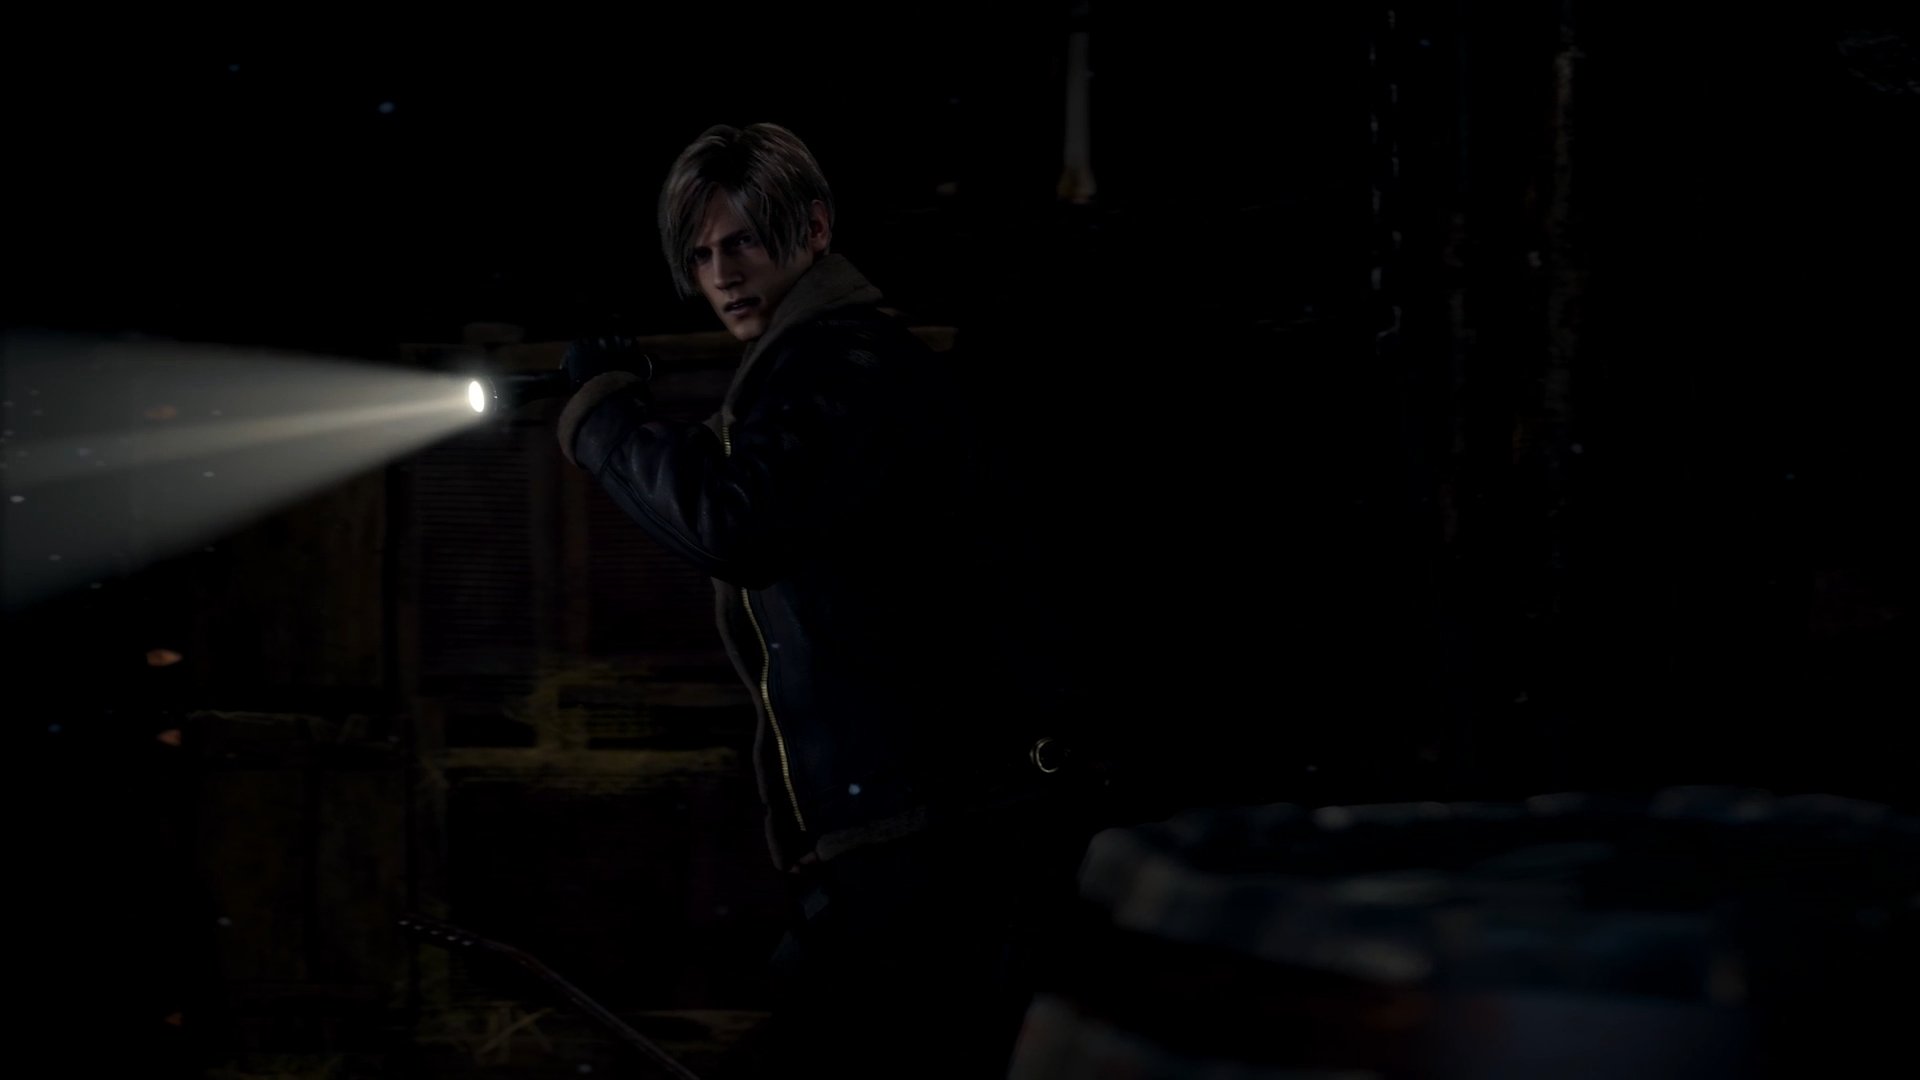 Confira novo trailer e gameplay inédito de Resident Evil 4 Remake, jogo  será dublado em Português do Brasil! - EvilHazard